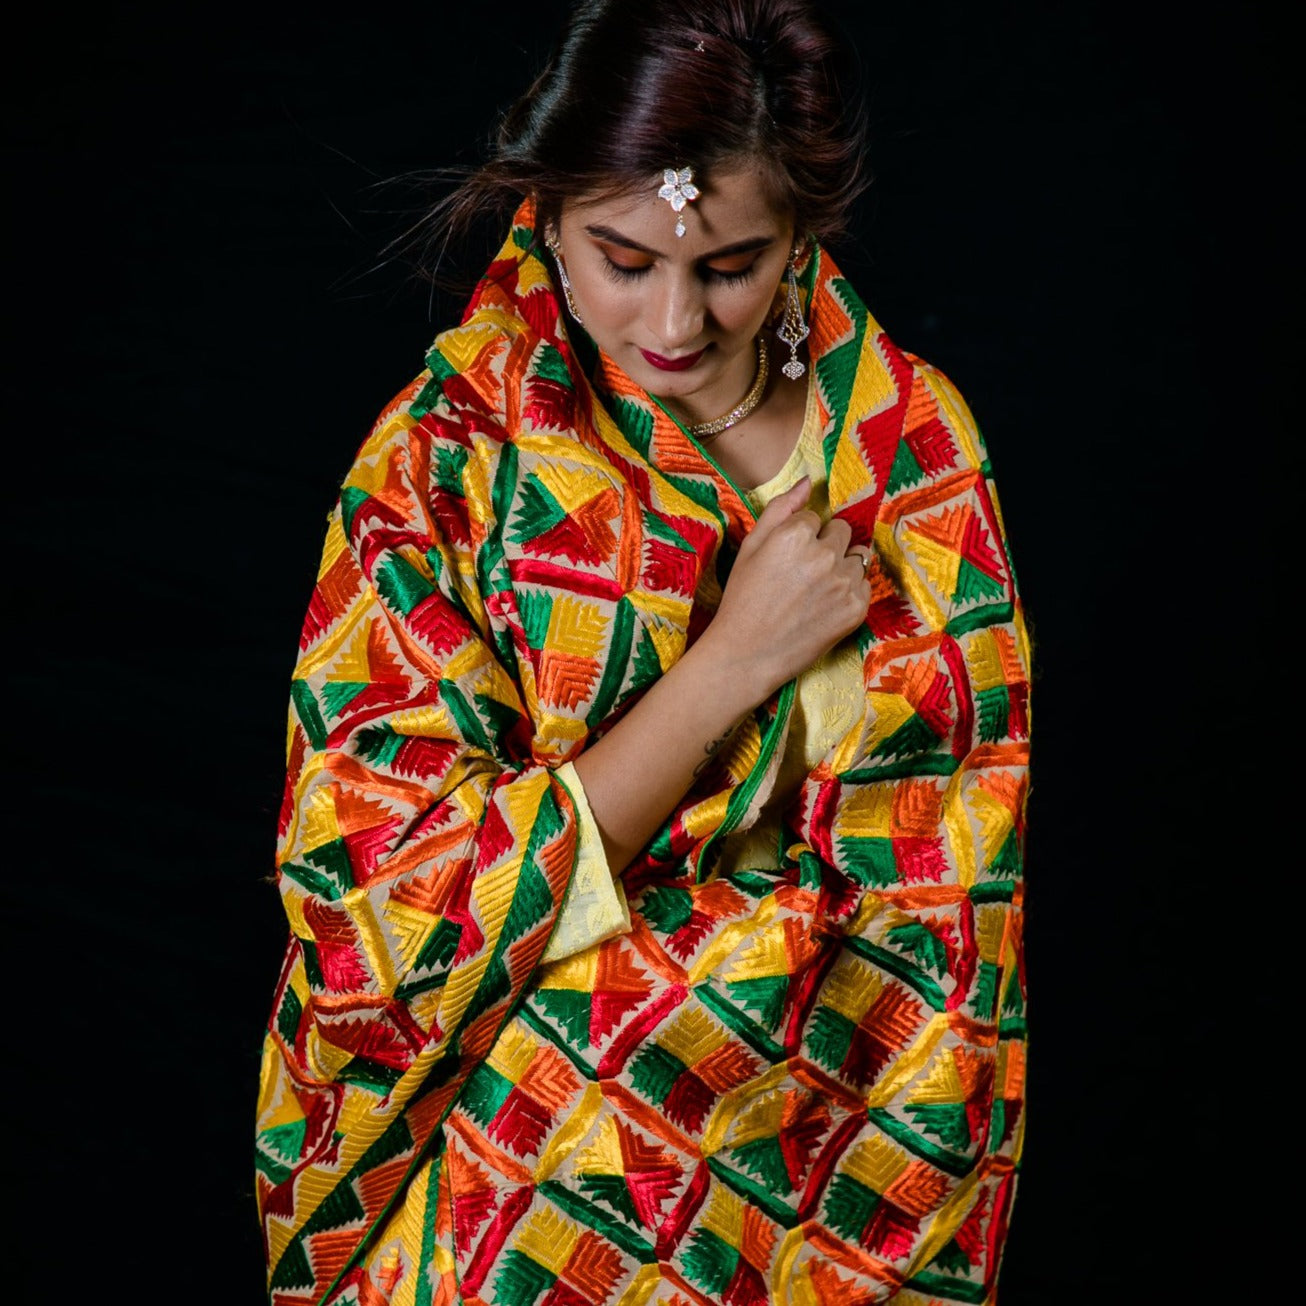 Phulkari Machine-Embroidered Cotton Dupatta - Multicolor5